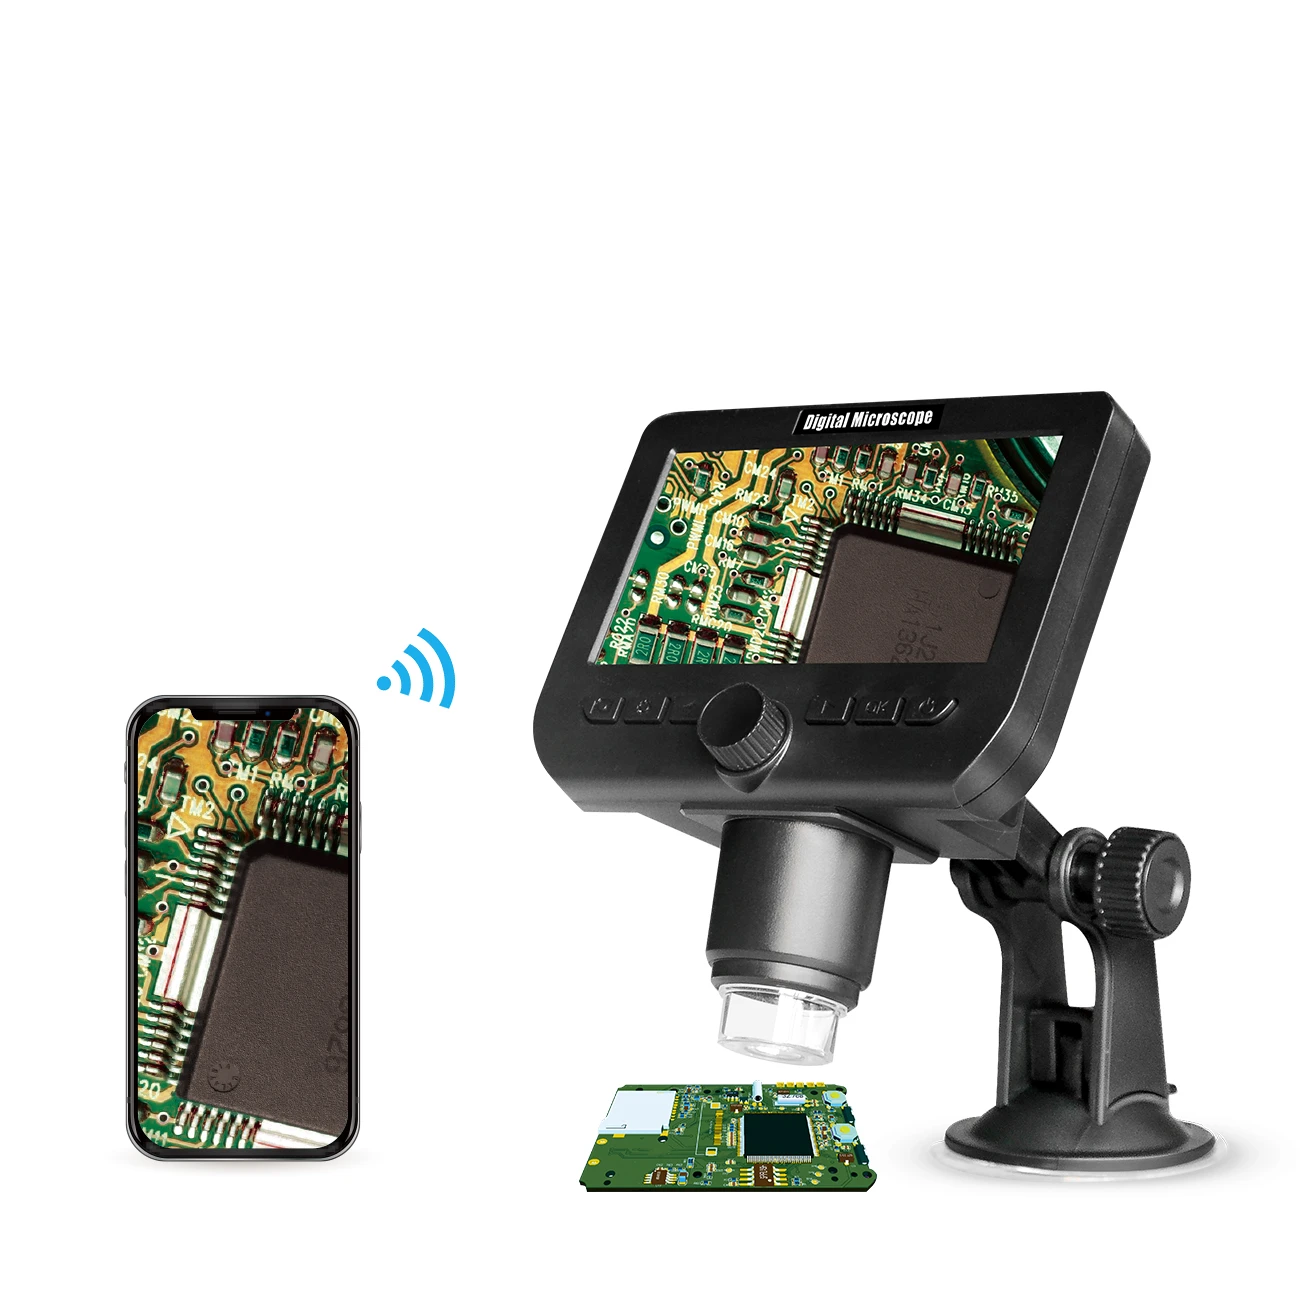 

Inskam 2MP 1000X раз 1080P ЖК-дисплей рабочий сканер электронный микроскоп WiFi с 8 светодиодами